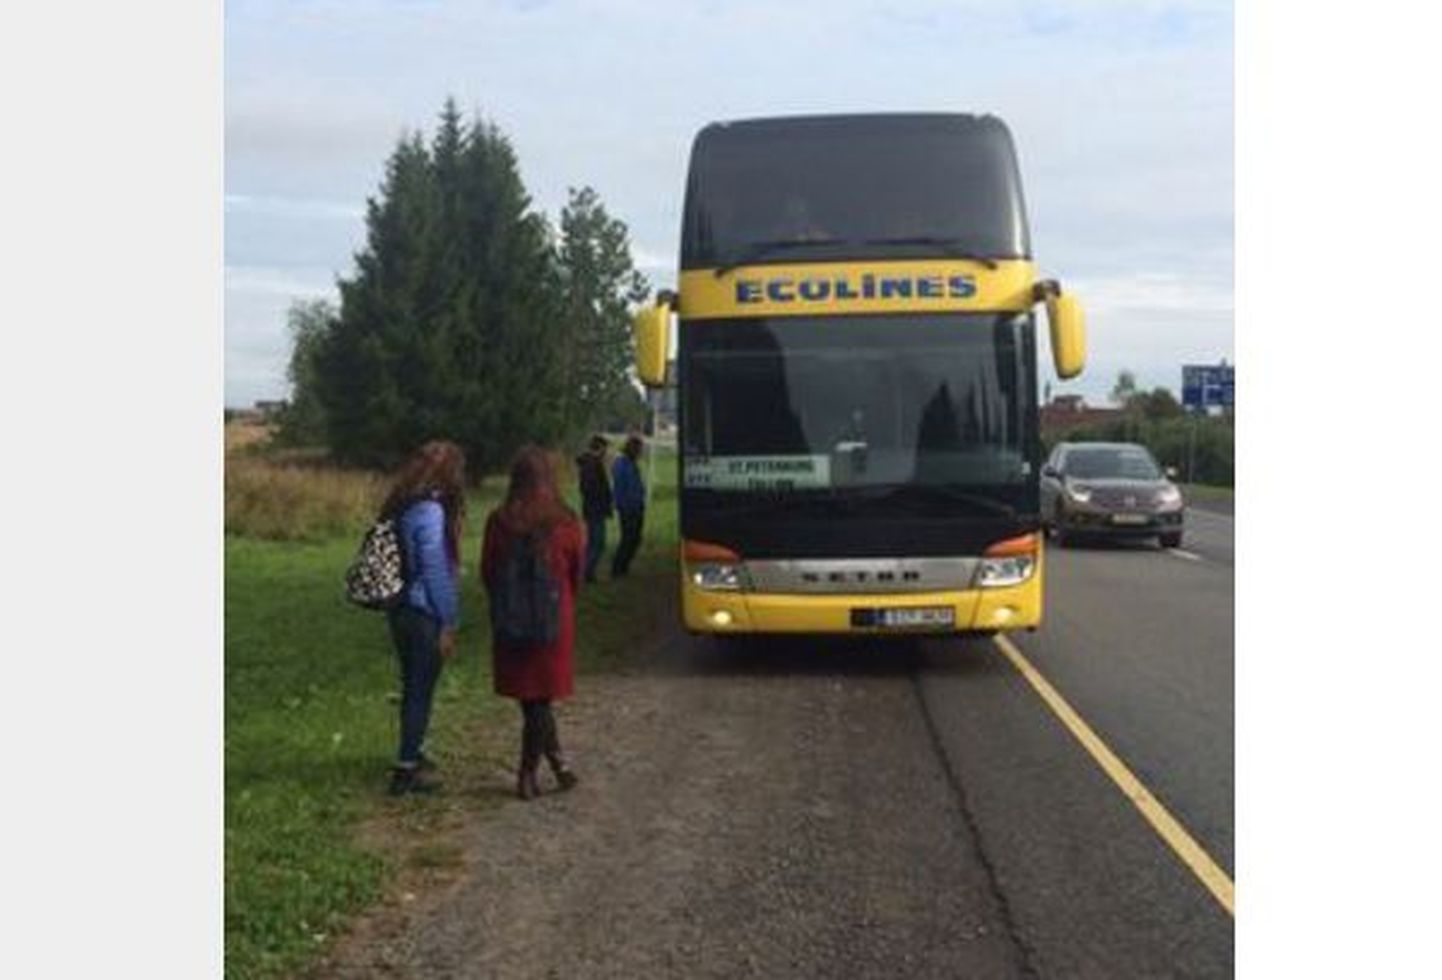 Ecolines'i buss pidi rehvi purunemise tõttu peatuma.